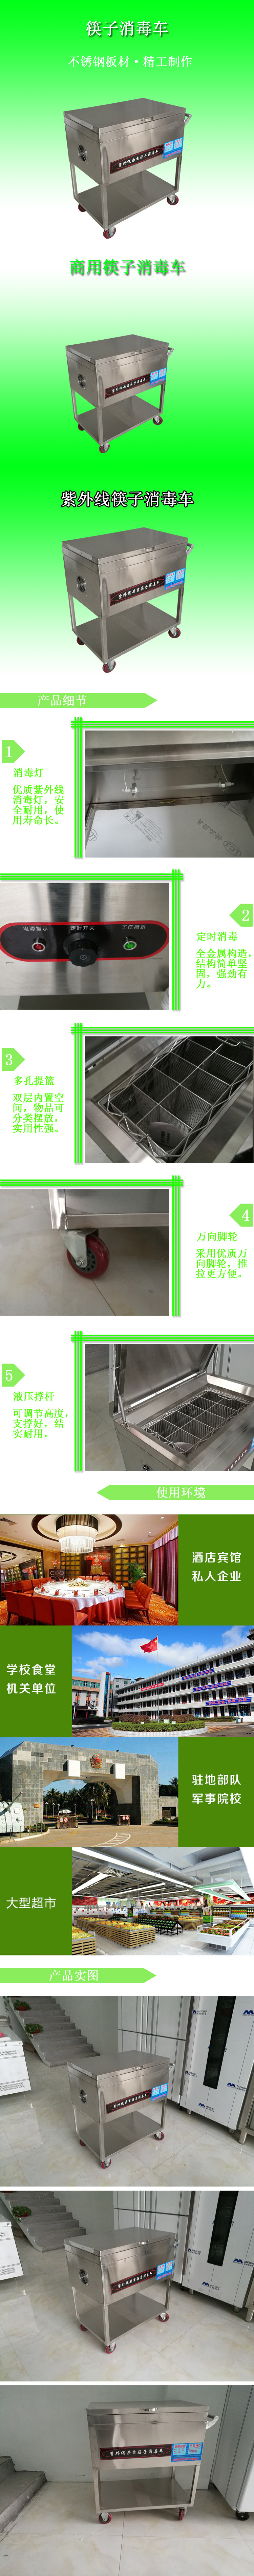 不锈钢筷子消毒车 商用热循环消毒柜式烘干机紫外线消毒车